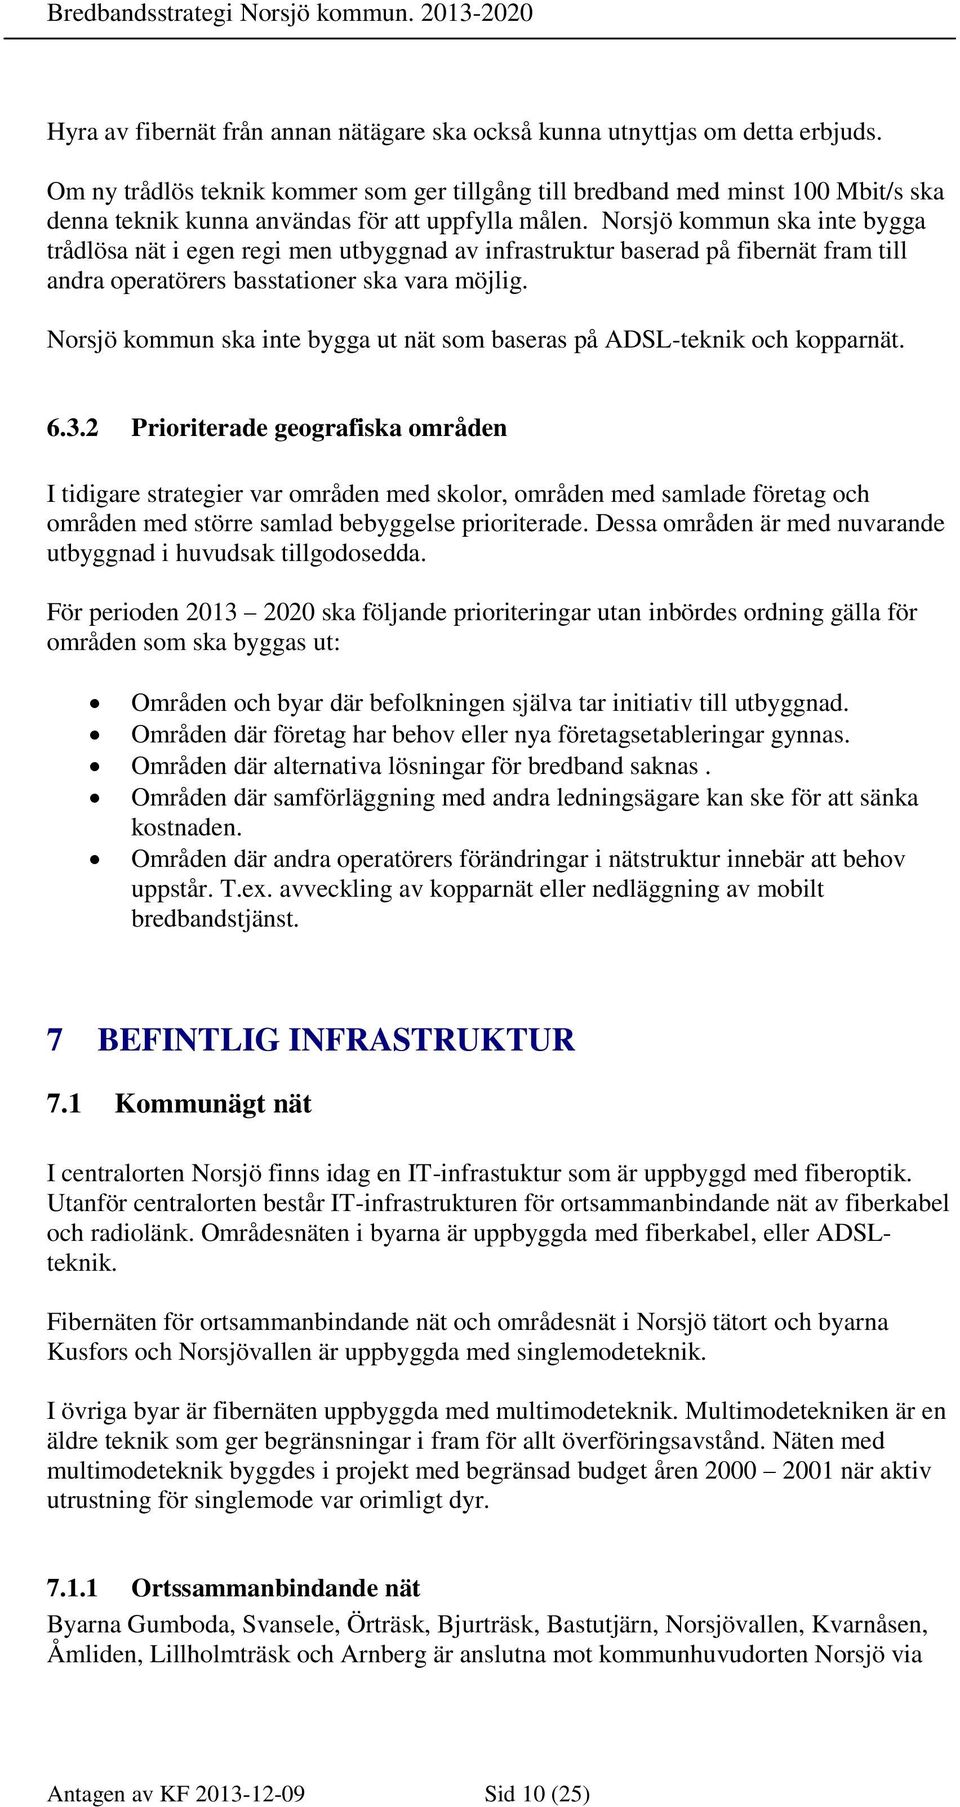 Norsjö kommun ska inte bygga trådlösa nät i egen regi men utbyggnad av infrastruktur baserad på fibernät fram till andra operatörers basstationer ska vara möjlig.